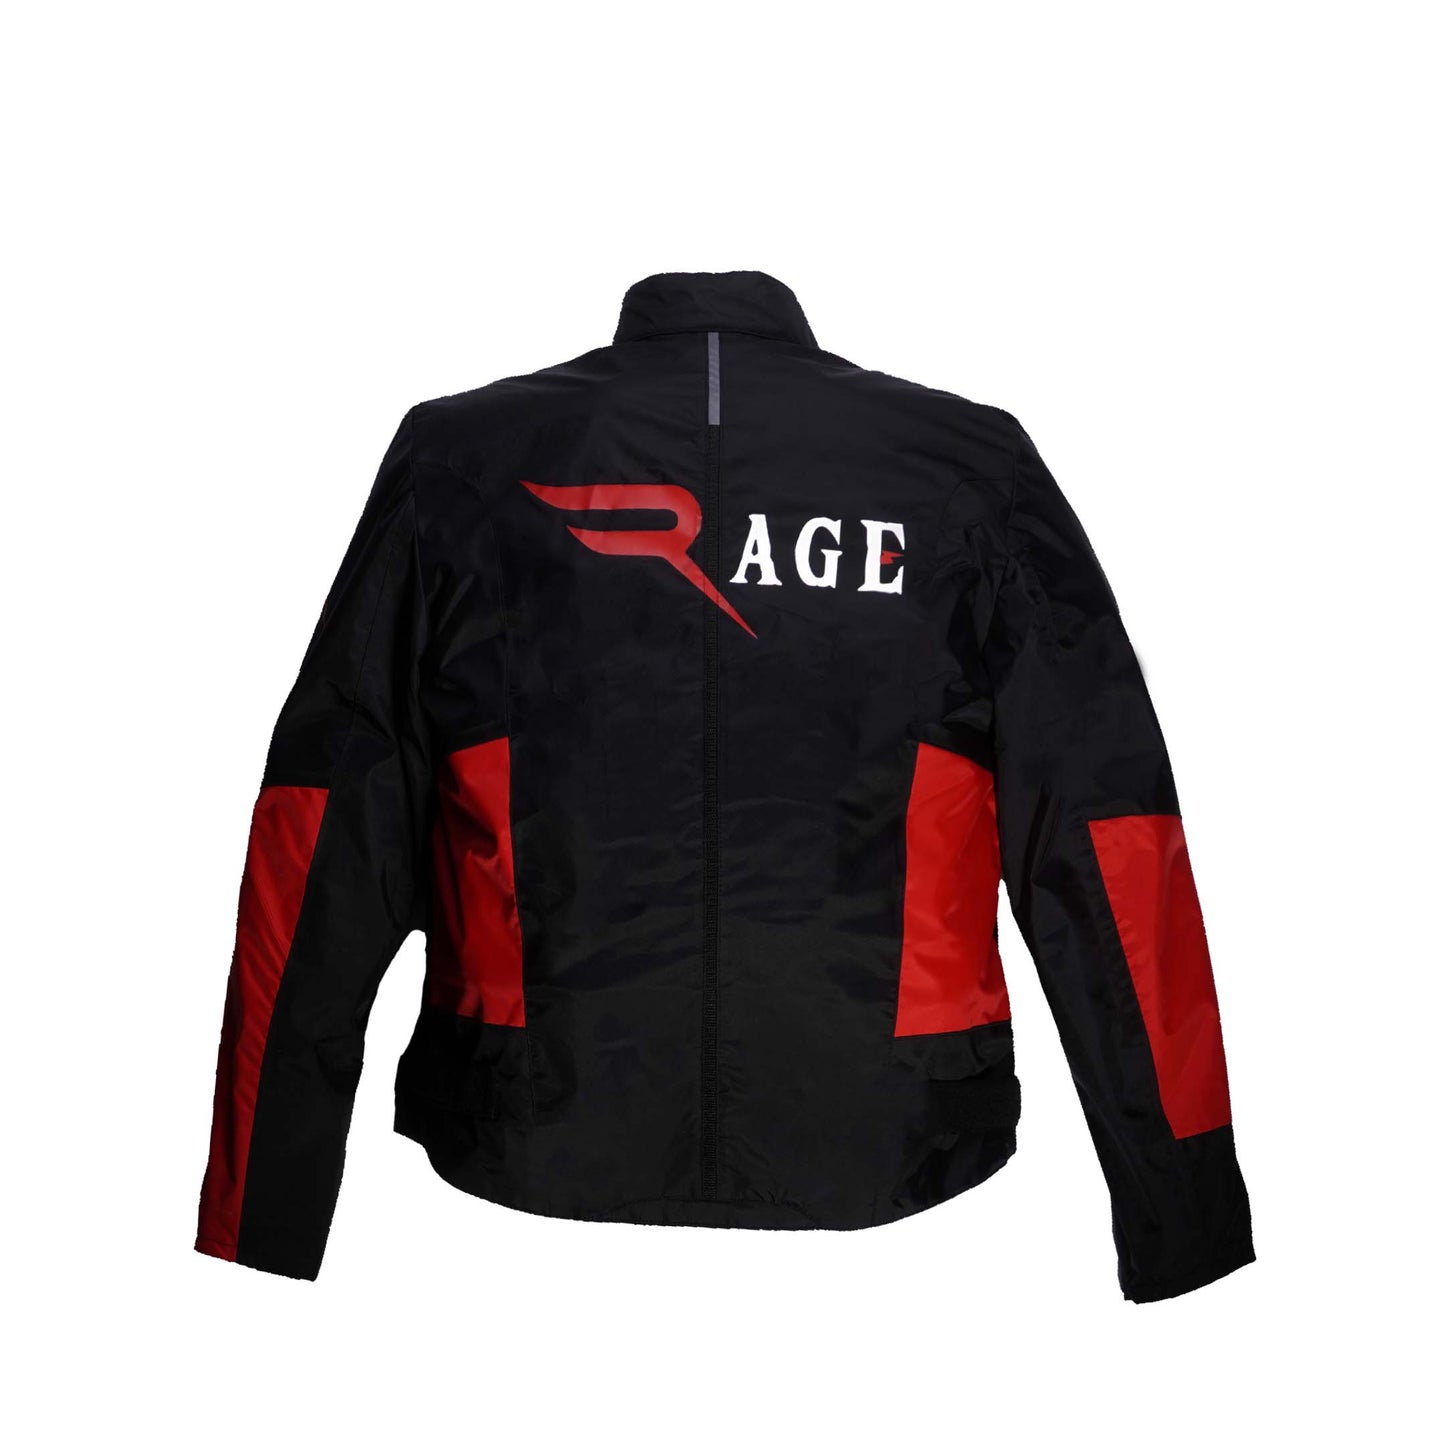 Rage waterproof jacket  CO : 272